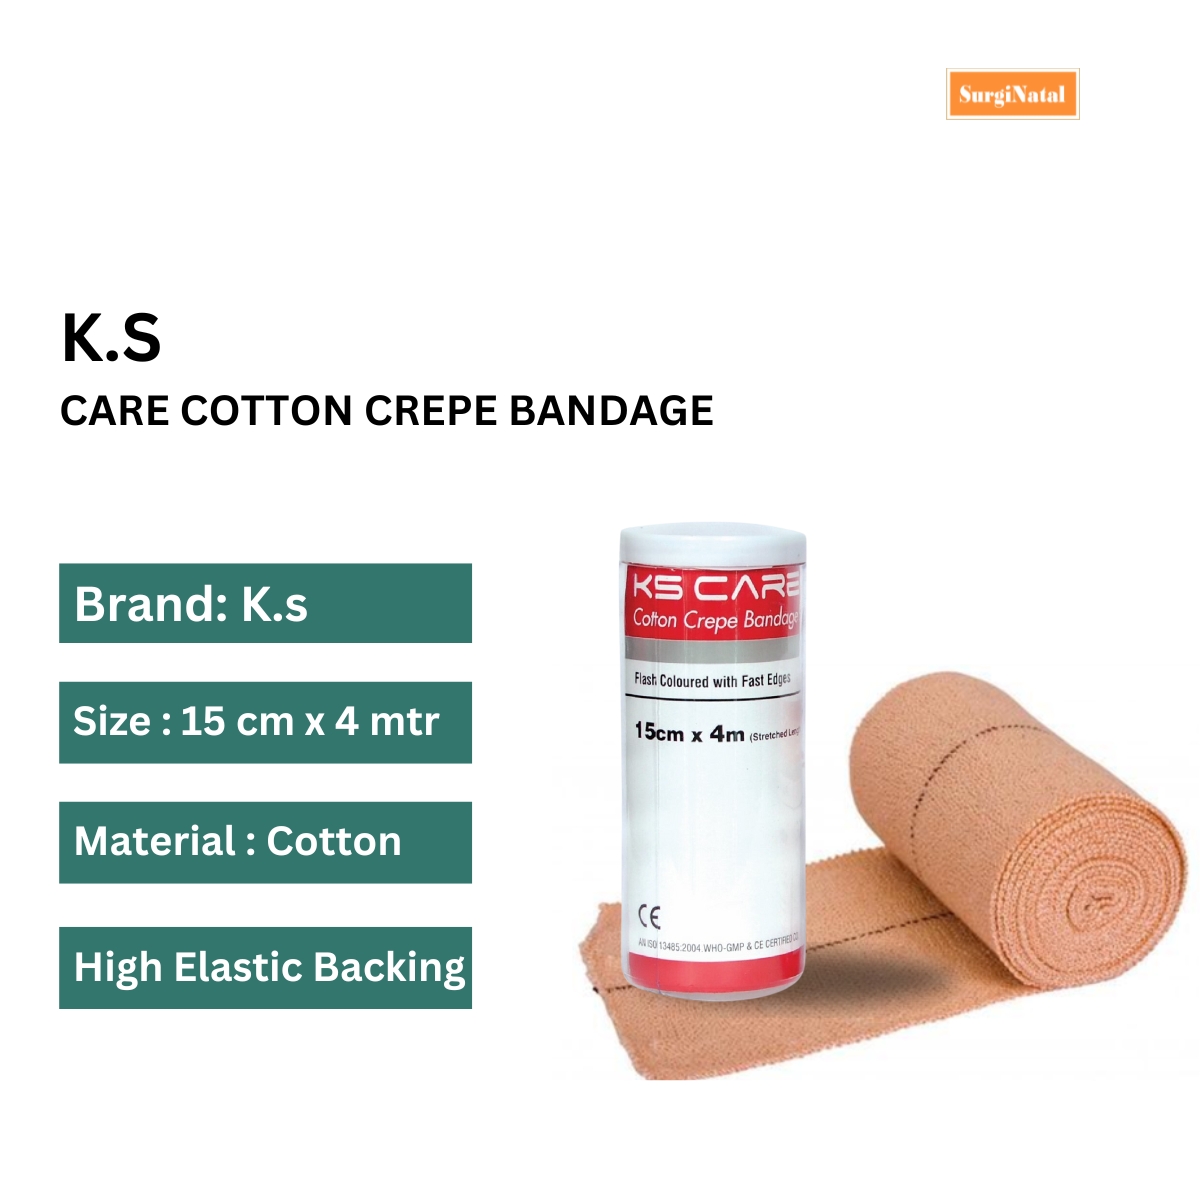 k. s. care cotton crepe bandage 15 cm x 4 mtr